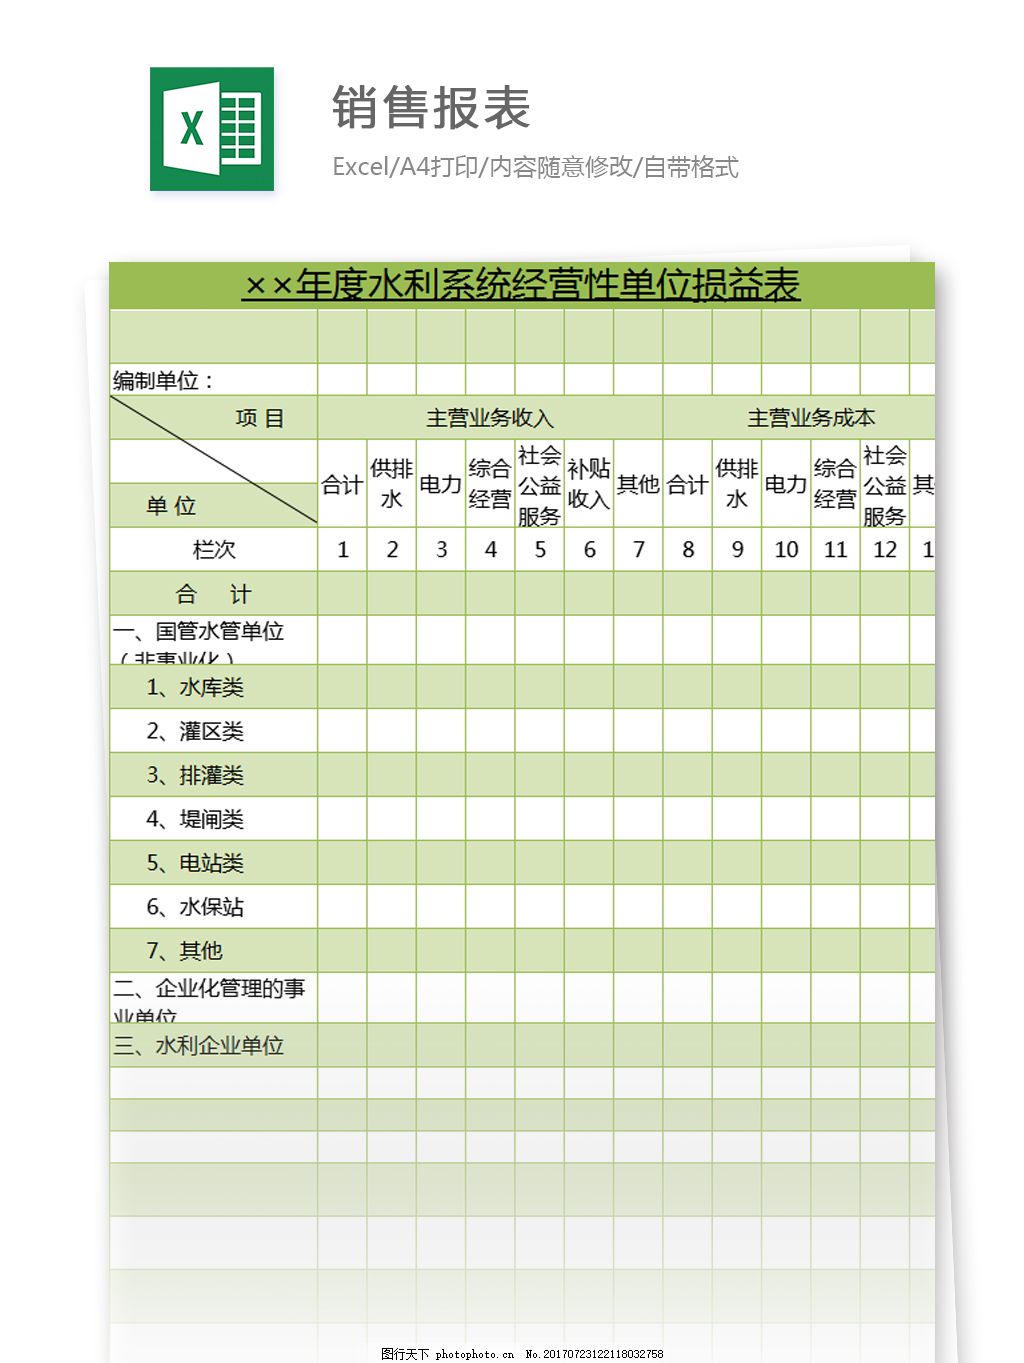 车间生产日报表免费下载_车间生产日报表Excel模板下载-下载之家